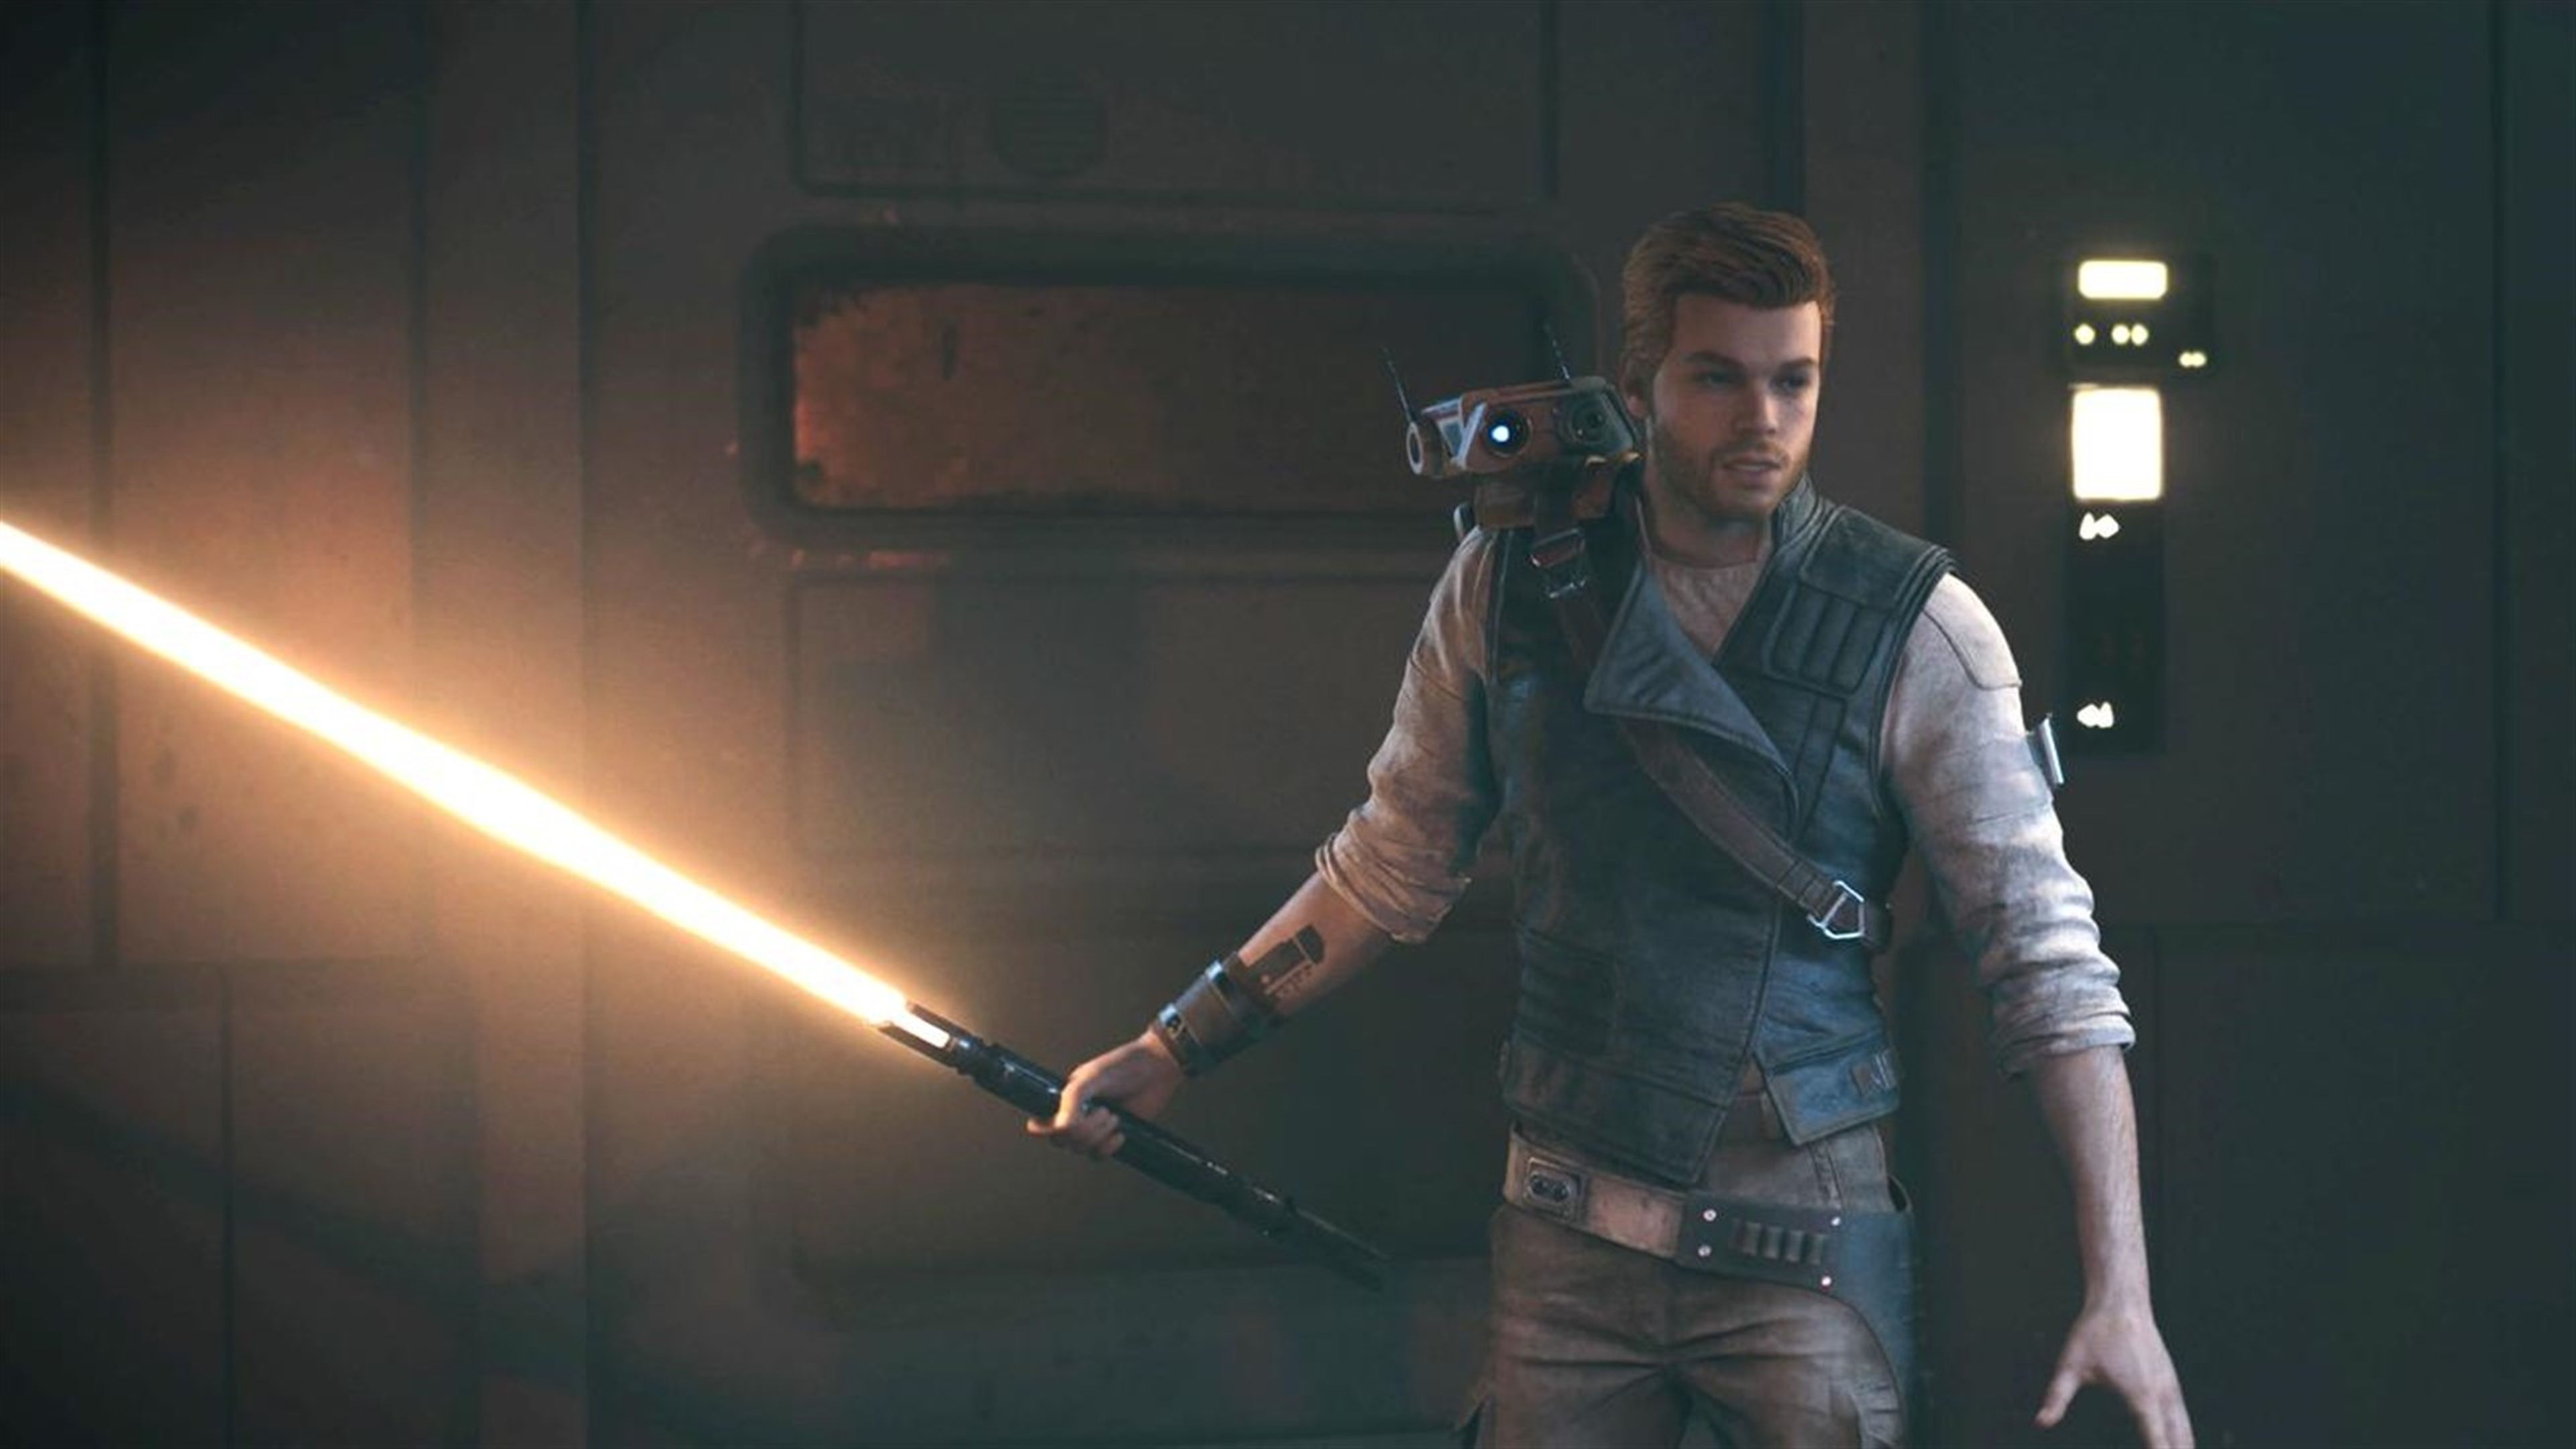 Nuevo parche de Star Wars Jedi: Survivor en PS5 y Xbox Series X, S, pronto a  PC